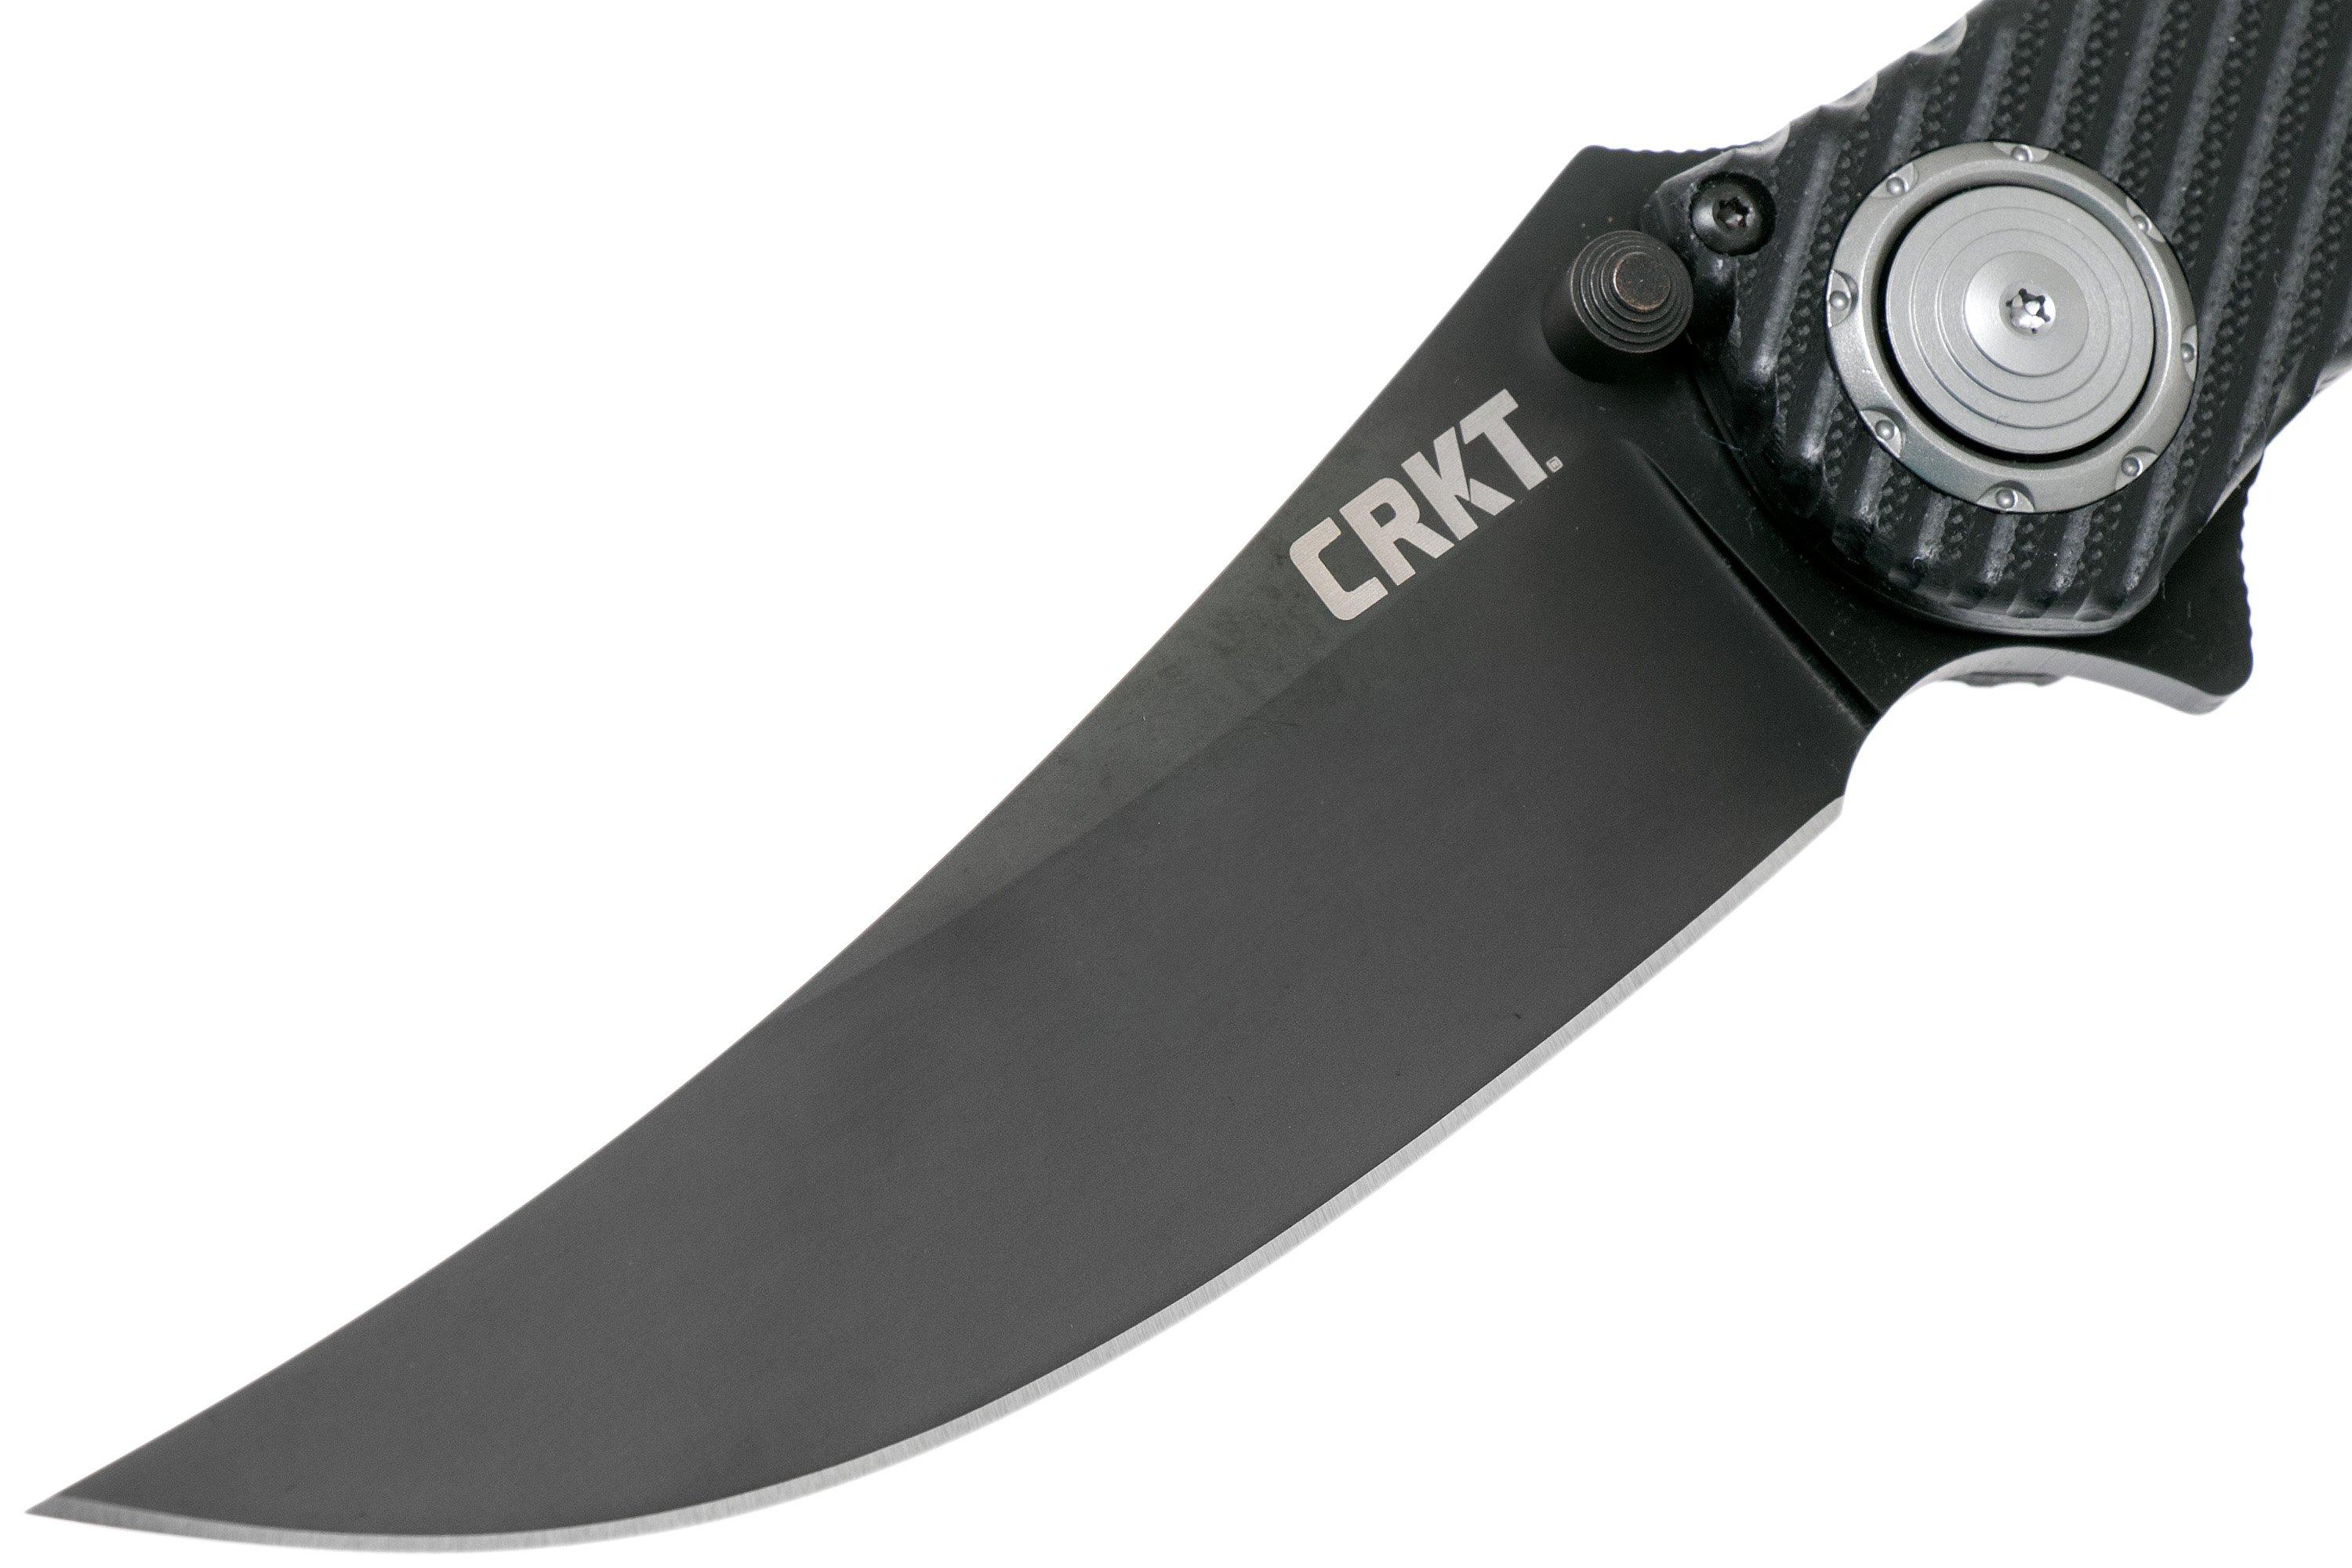 Columbia River CRKT 2640 Clever Girl IKBS Flipper Knife 4.084 D2 Black  Blade, Textured G10 Handles - KnifeCenter